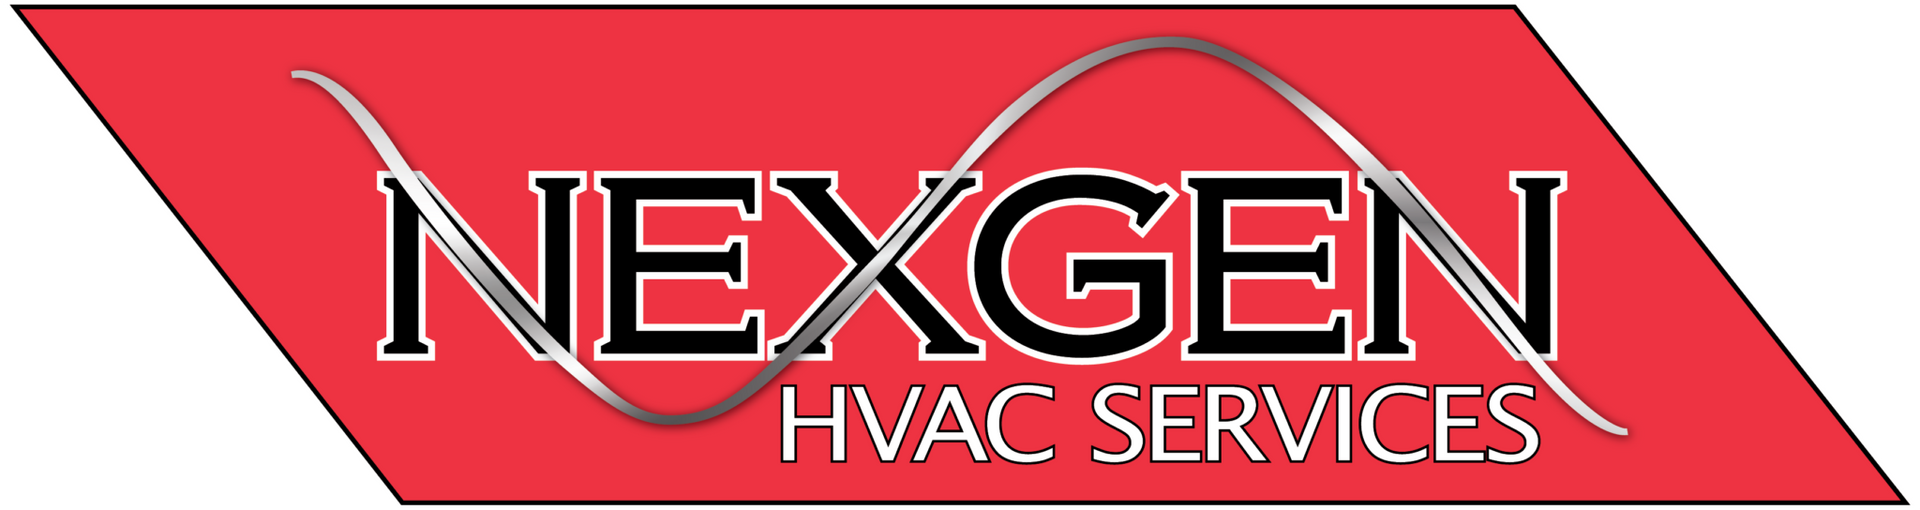 Nexgen HVAC Services - Logo